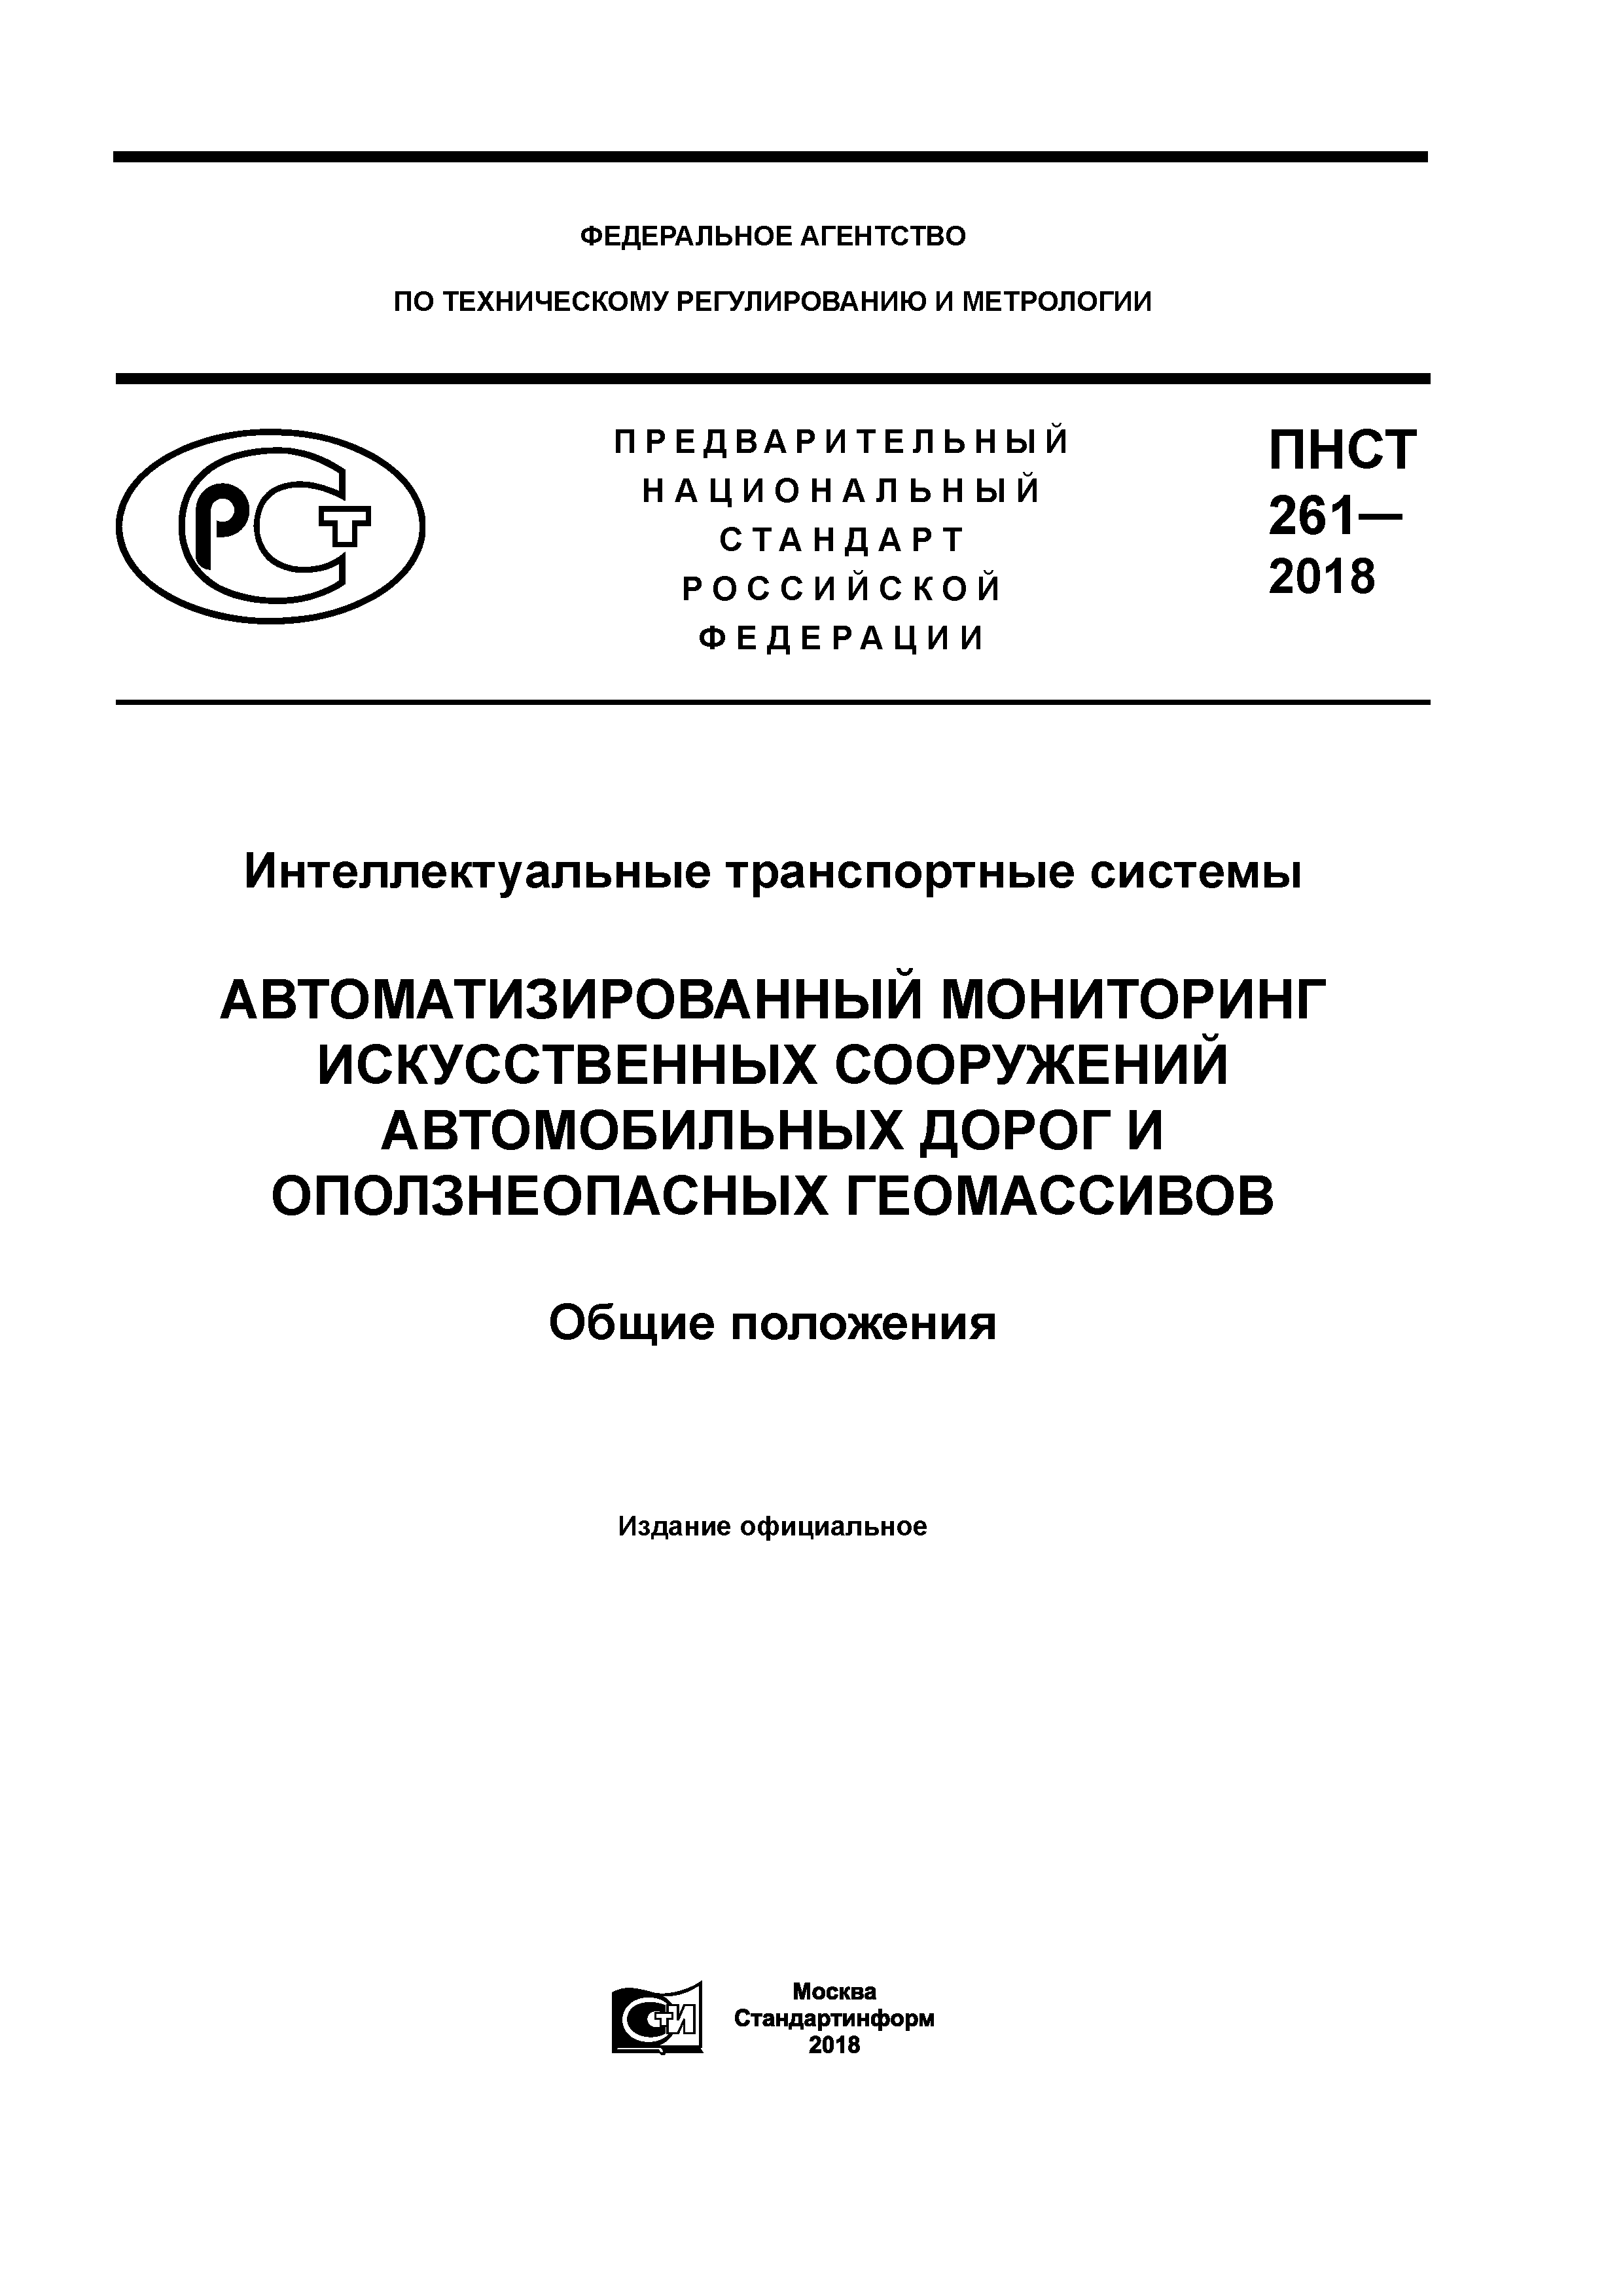 ПНСТ 261-2018